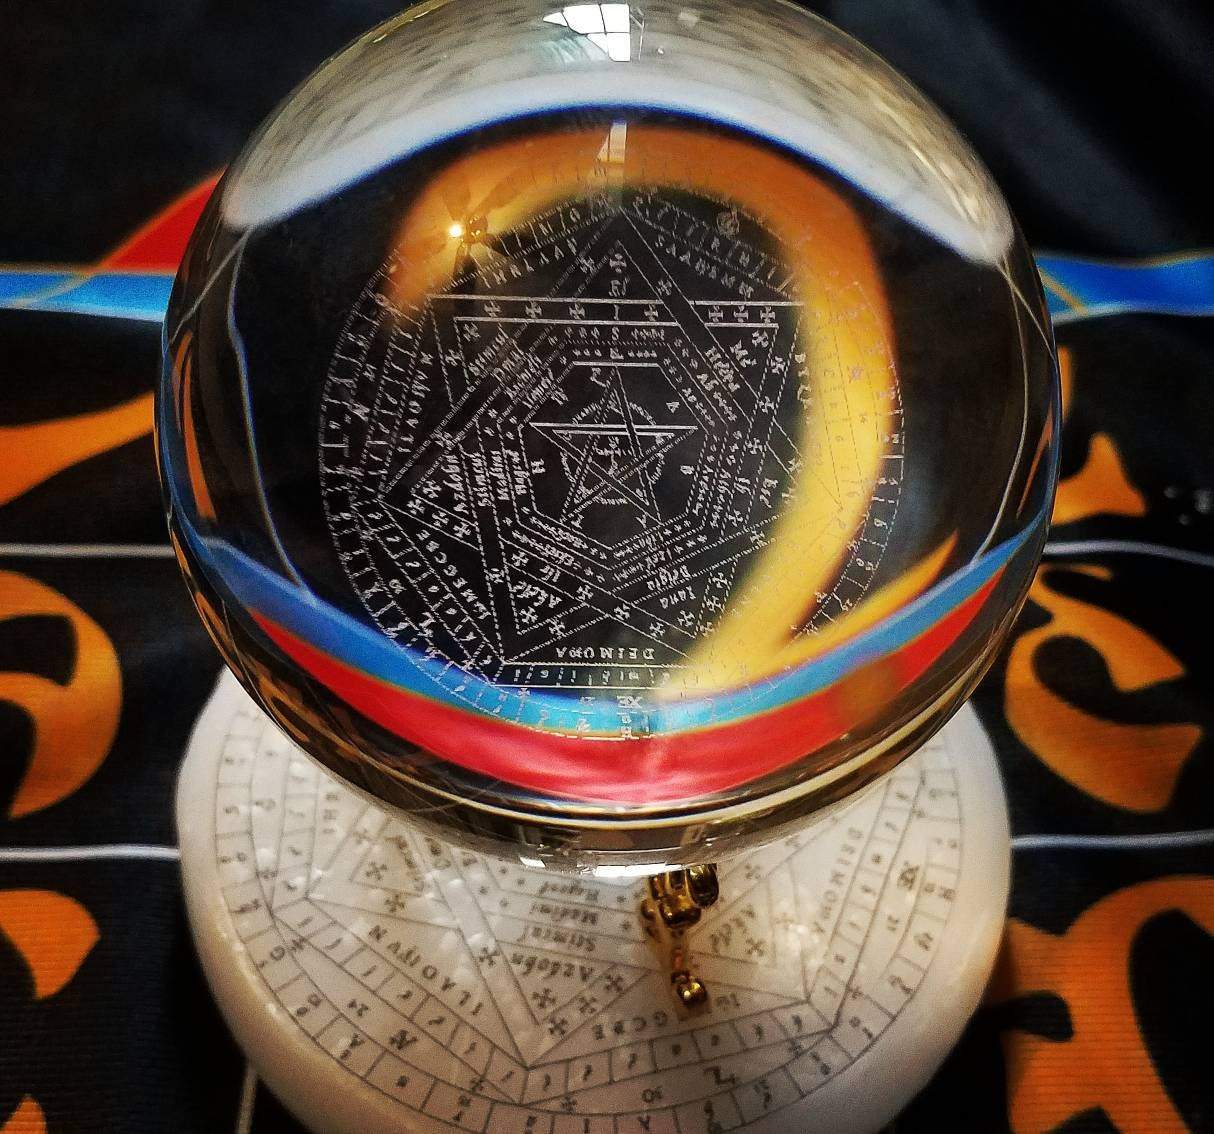 Sigillum Dei Aemeth crystal ball on a wax sigillum